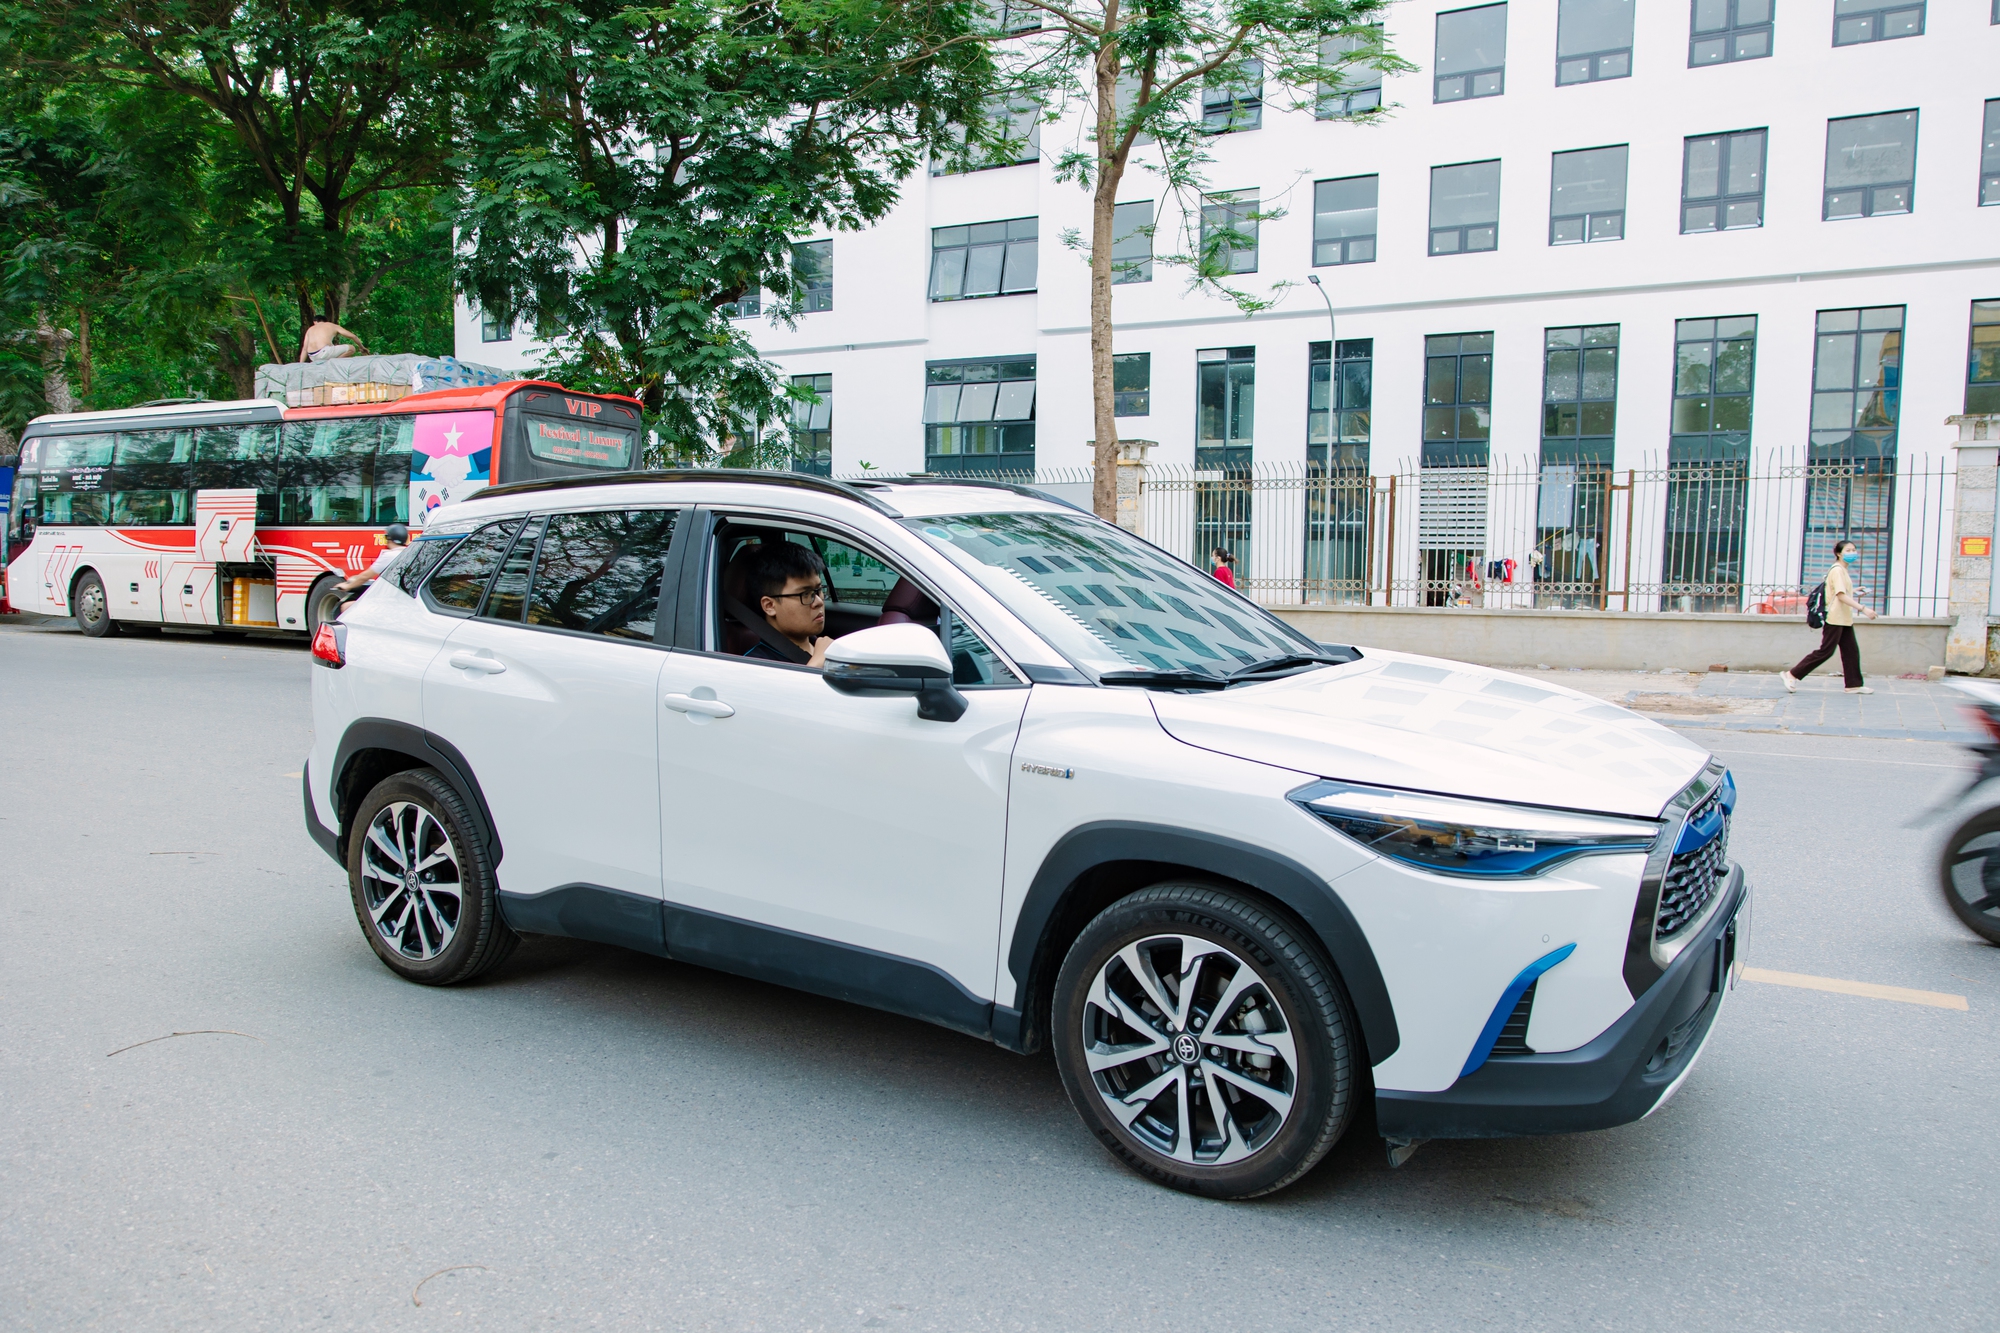 Toyota Việt Nam tổ chức Hội thảo “Giải pháp xanh giảm phát thải trong ngành ô tô hướng tới trung hòa carbon” - Ảnh 2.